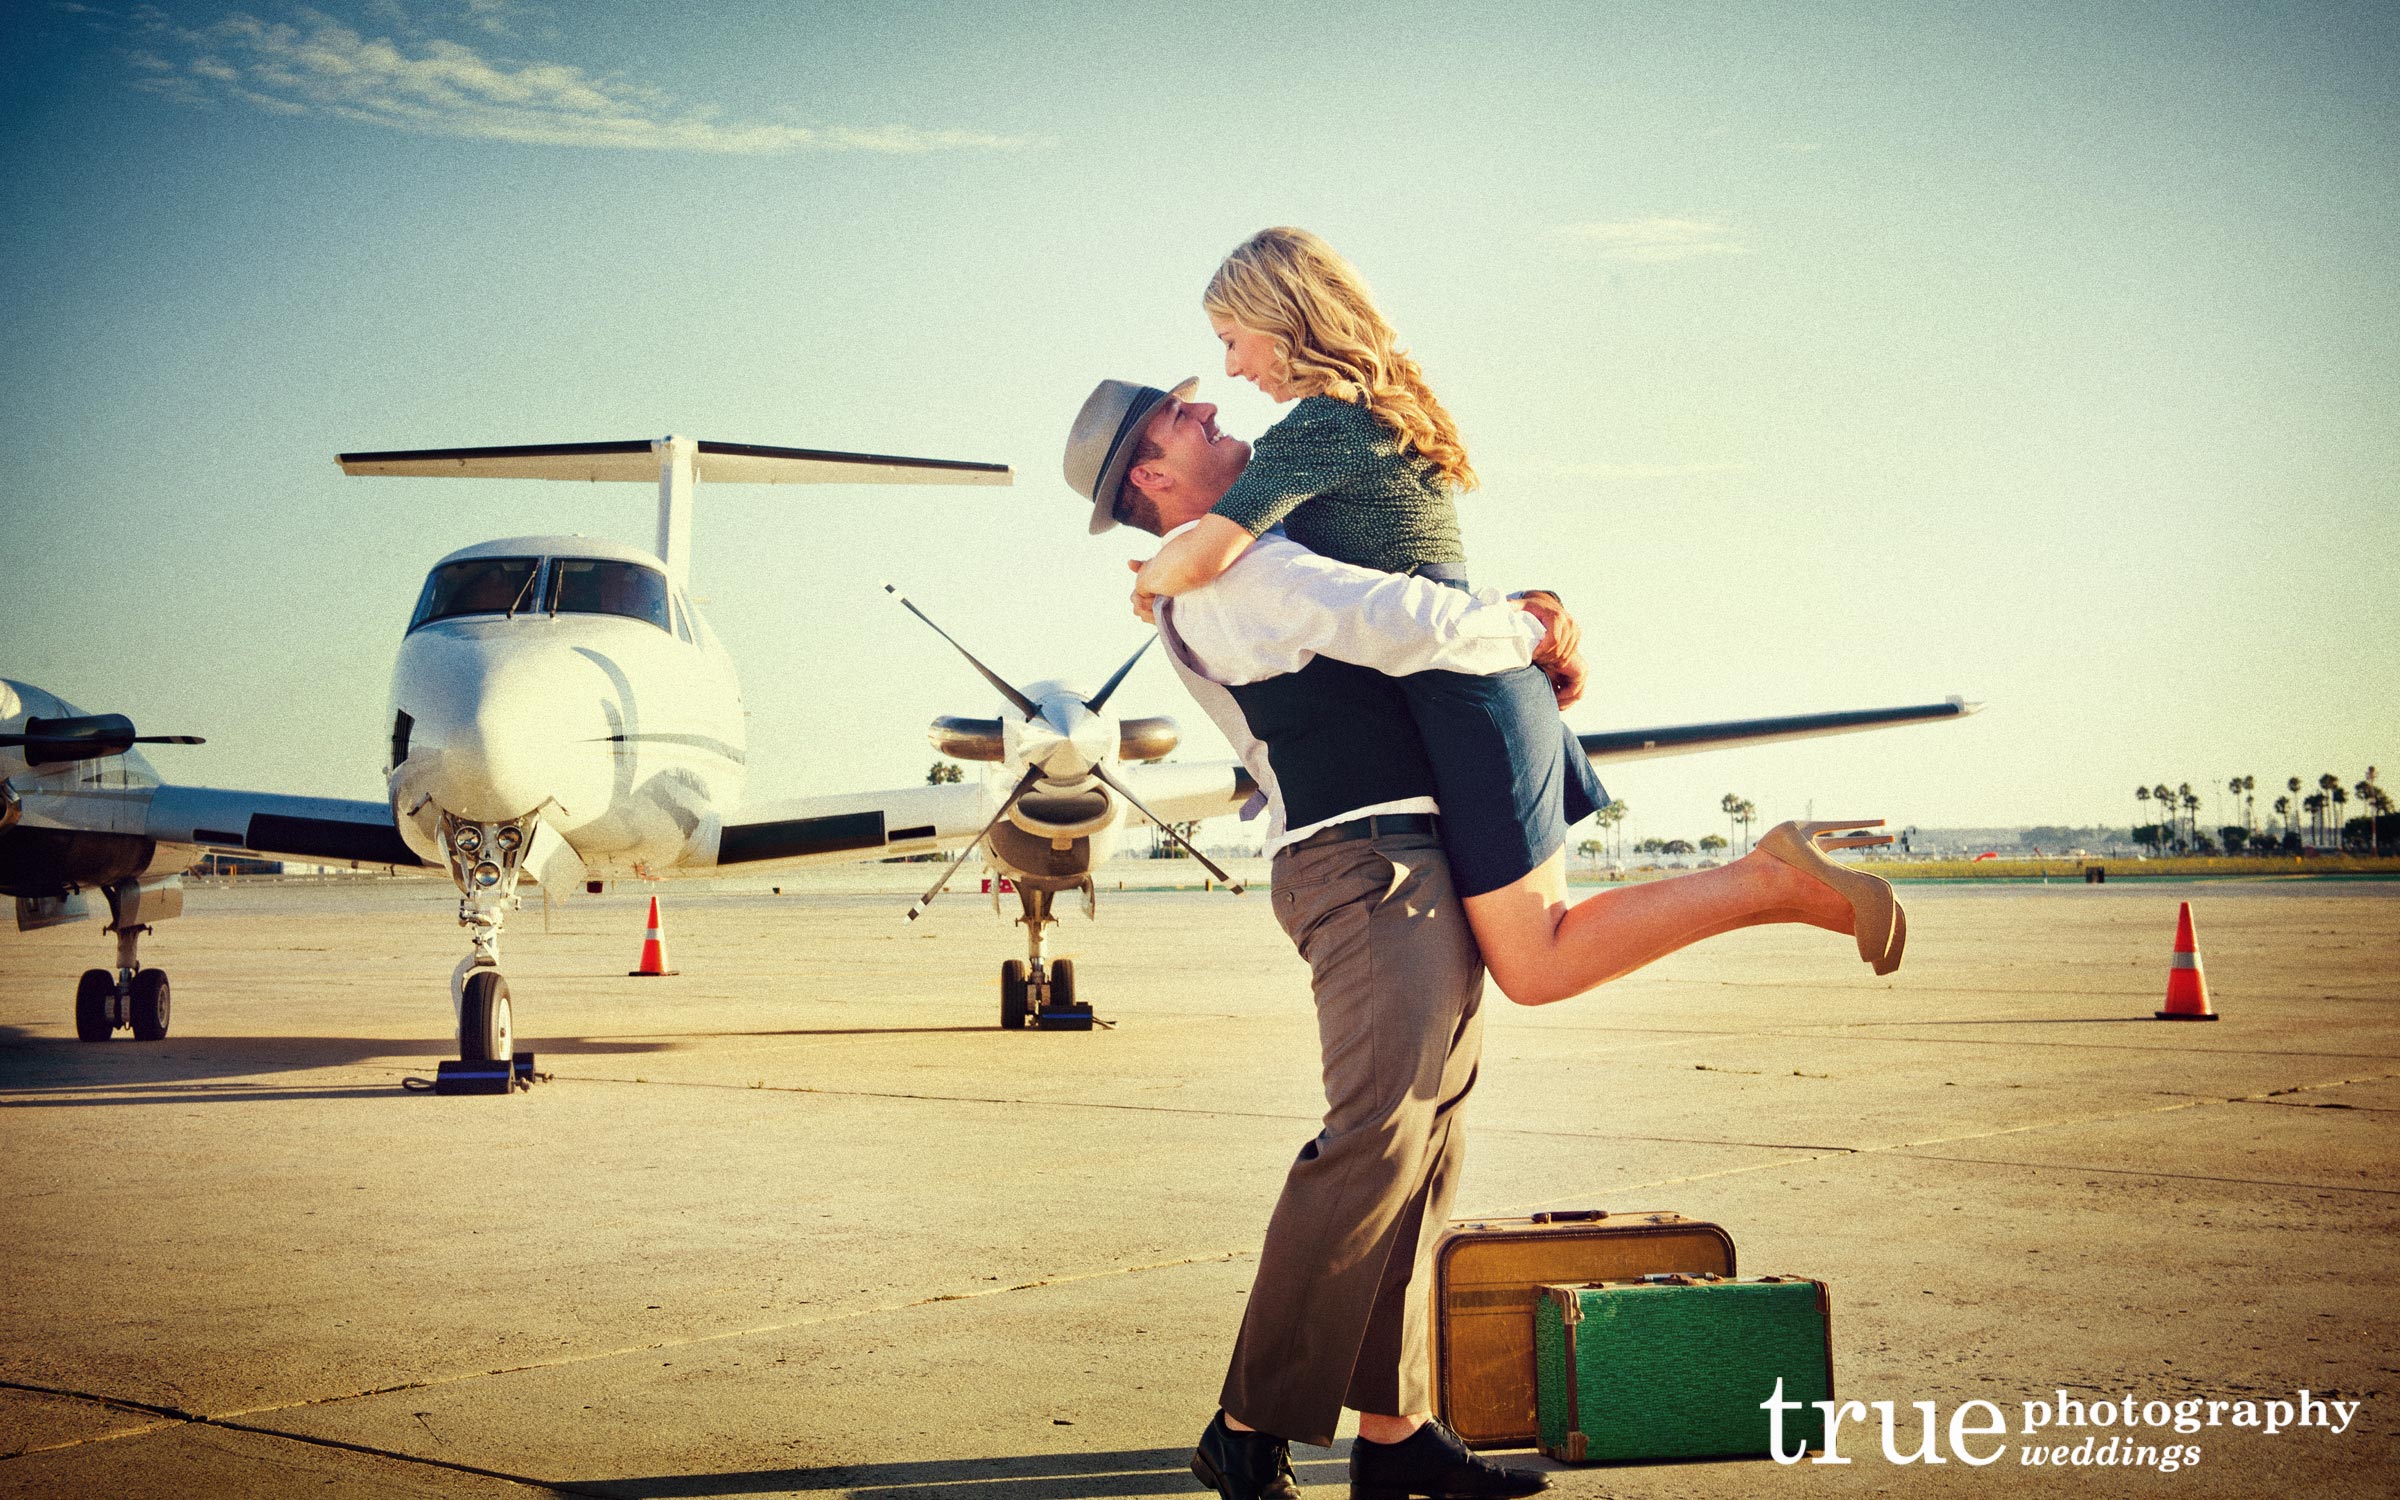 Чему будет рад мужчина. Парень и девушка в аэропорту. Девушка в самолете. Радостная встреча. Встреча в аэропорту влюбленных.